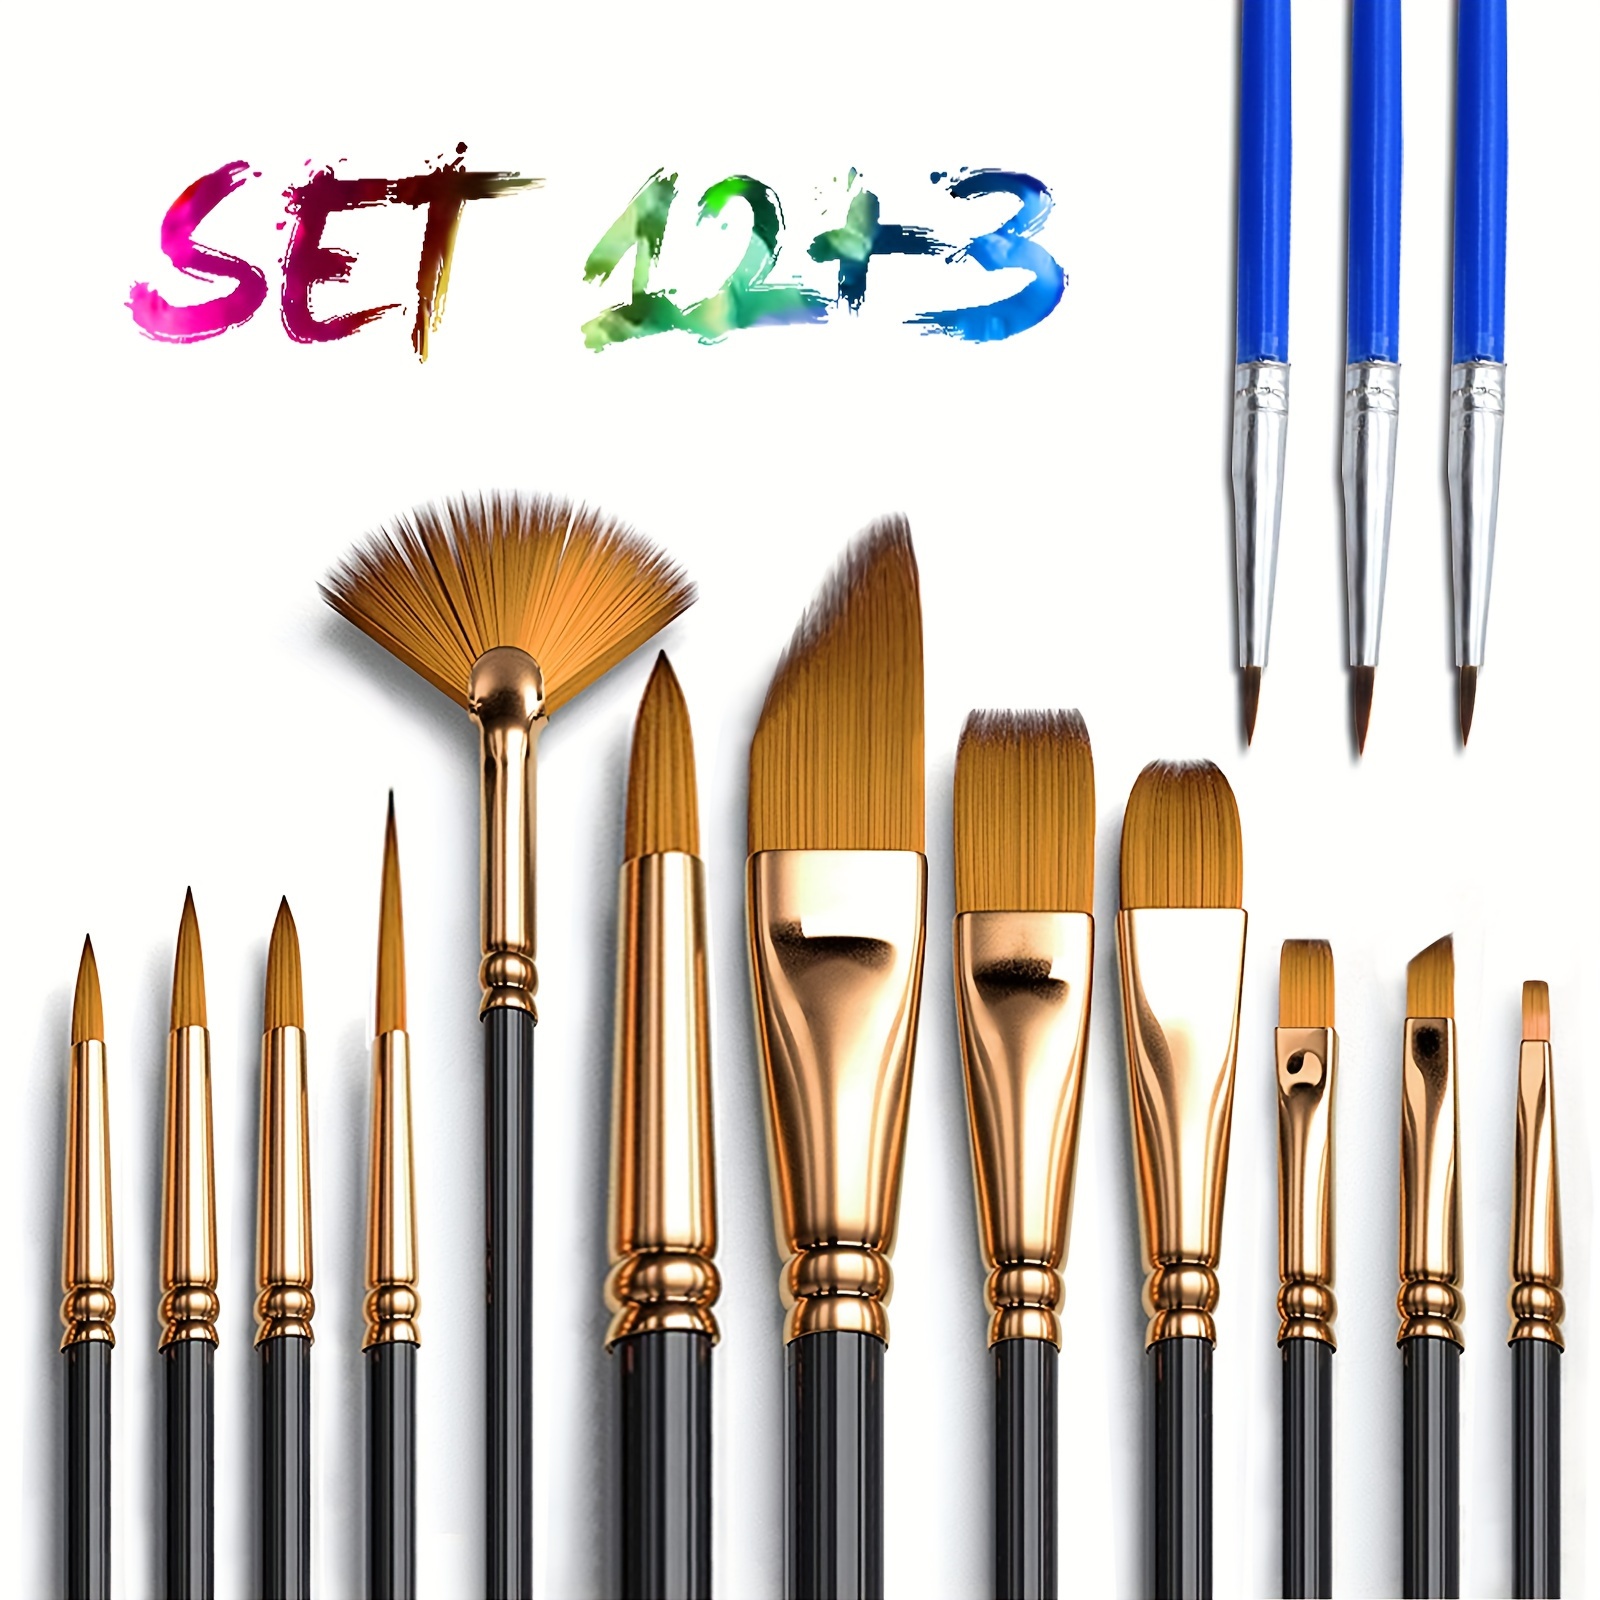 Paint Brushes Set-5 Piece, Wood Handle, Premium Wall Brush Set